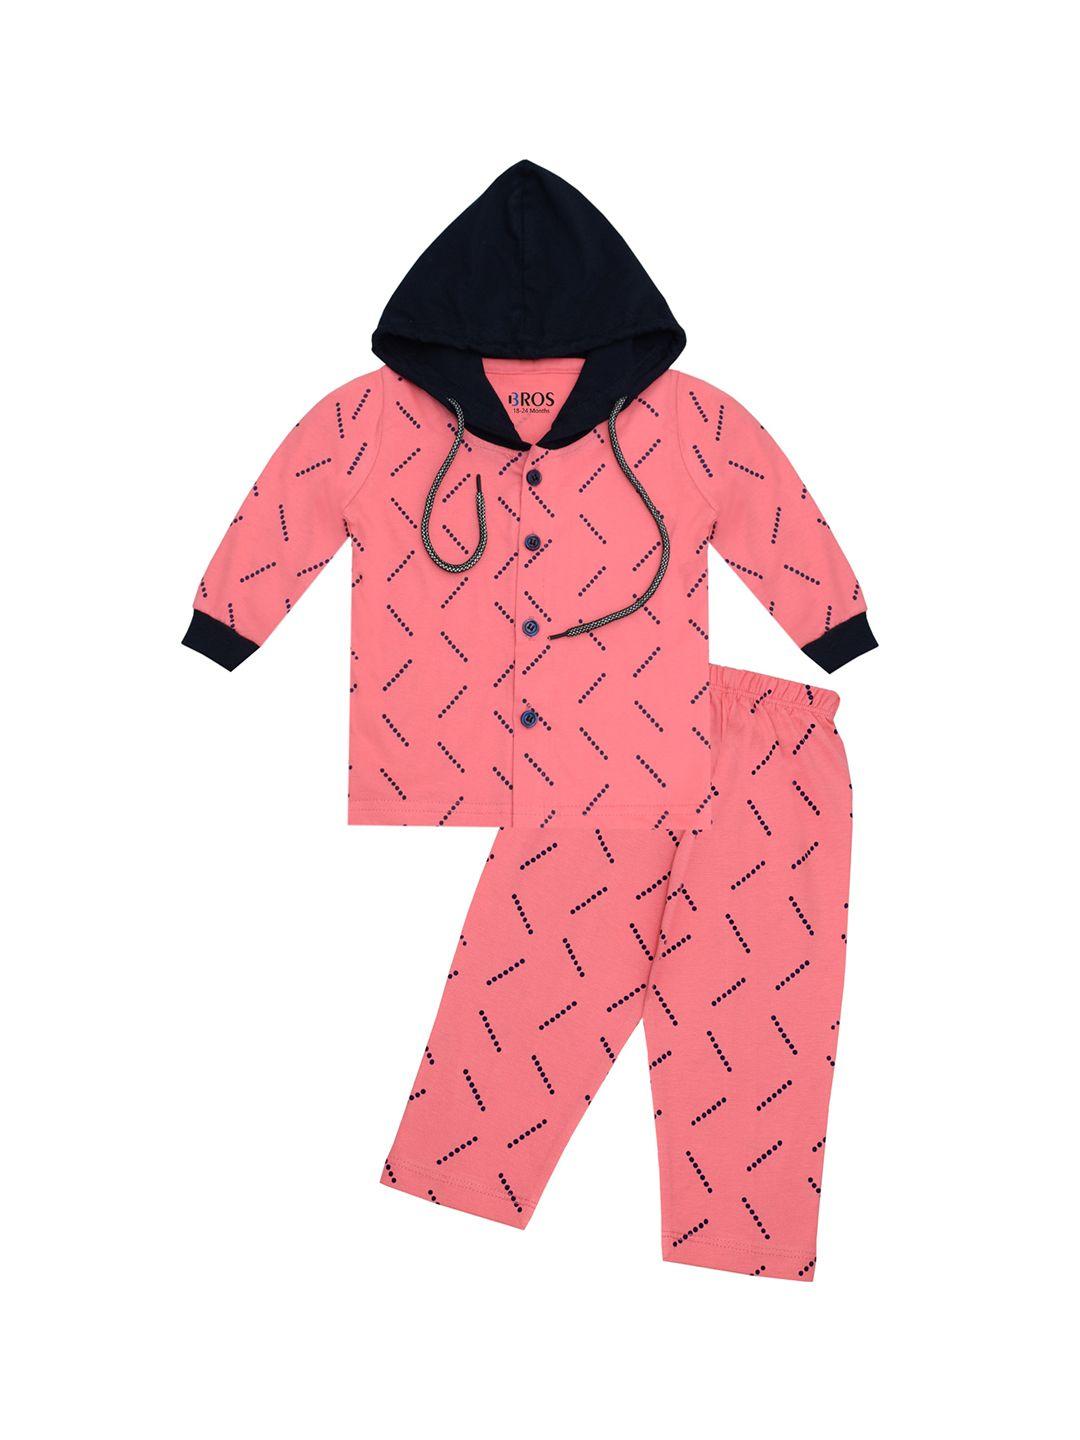 3bros-unisex-kids-pink-clothing-set